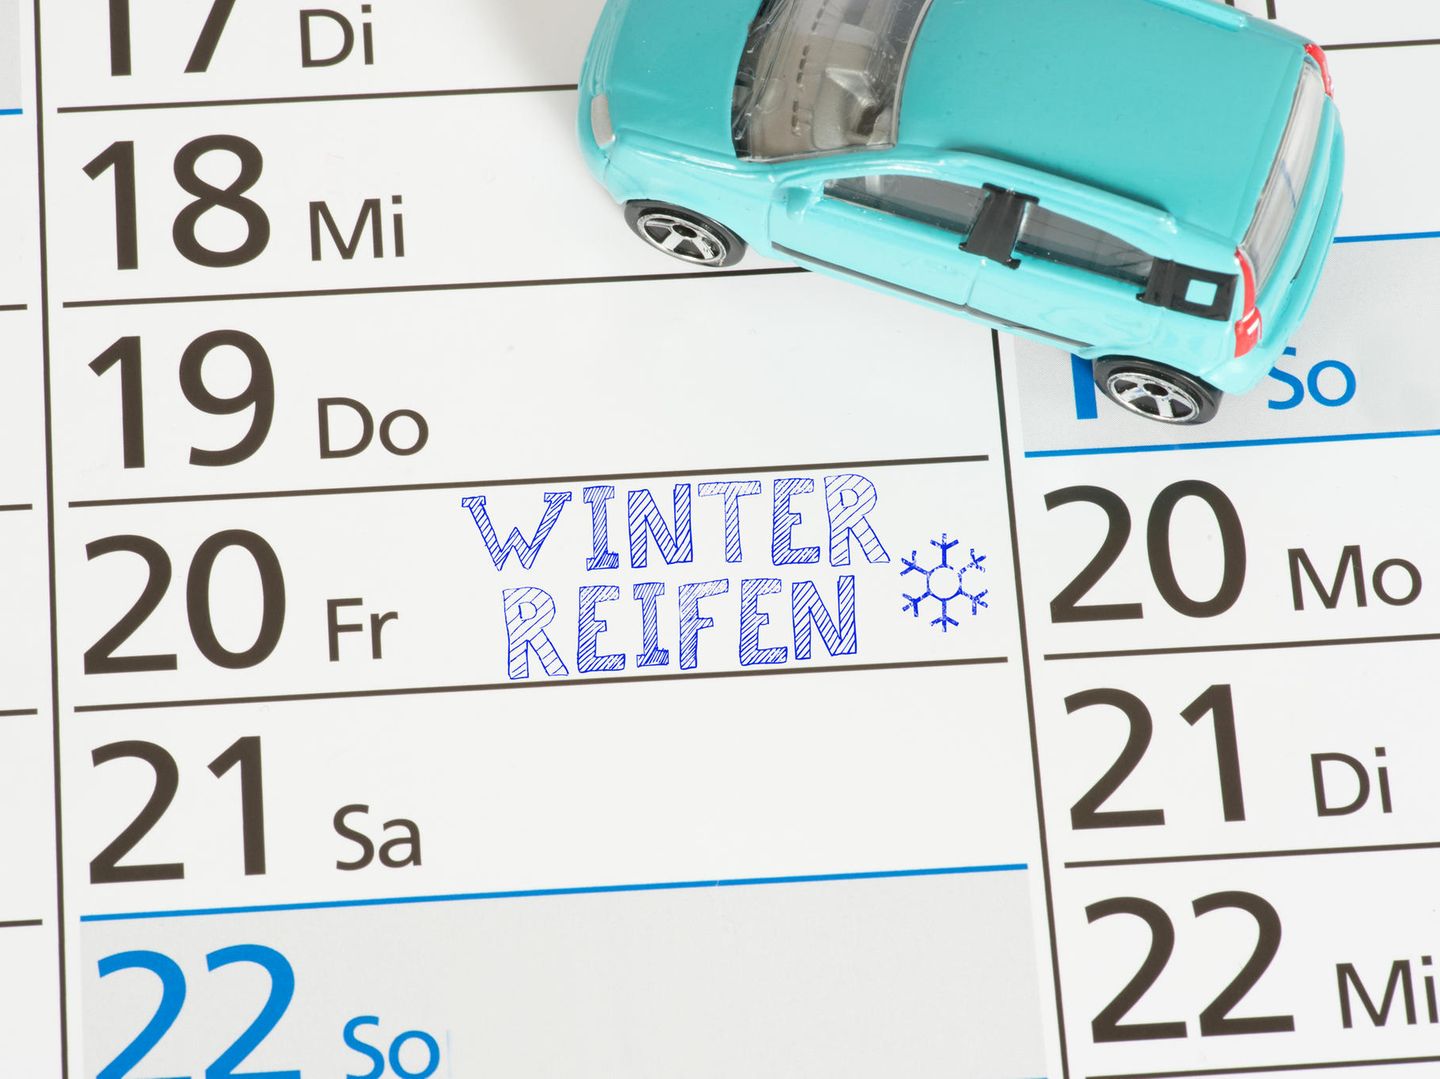 Winterfest Auto fahren in der kalten Jahreszeit – Das sollten Sie beachten